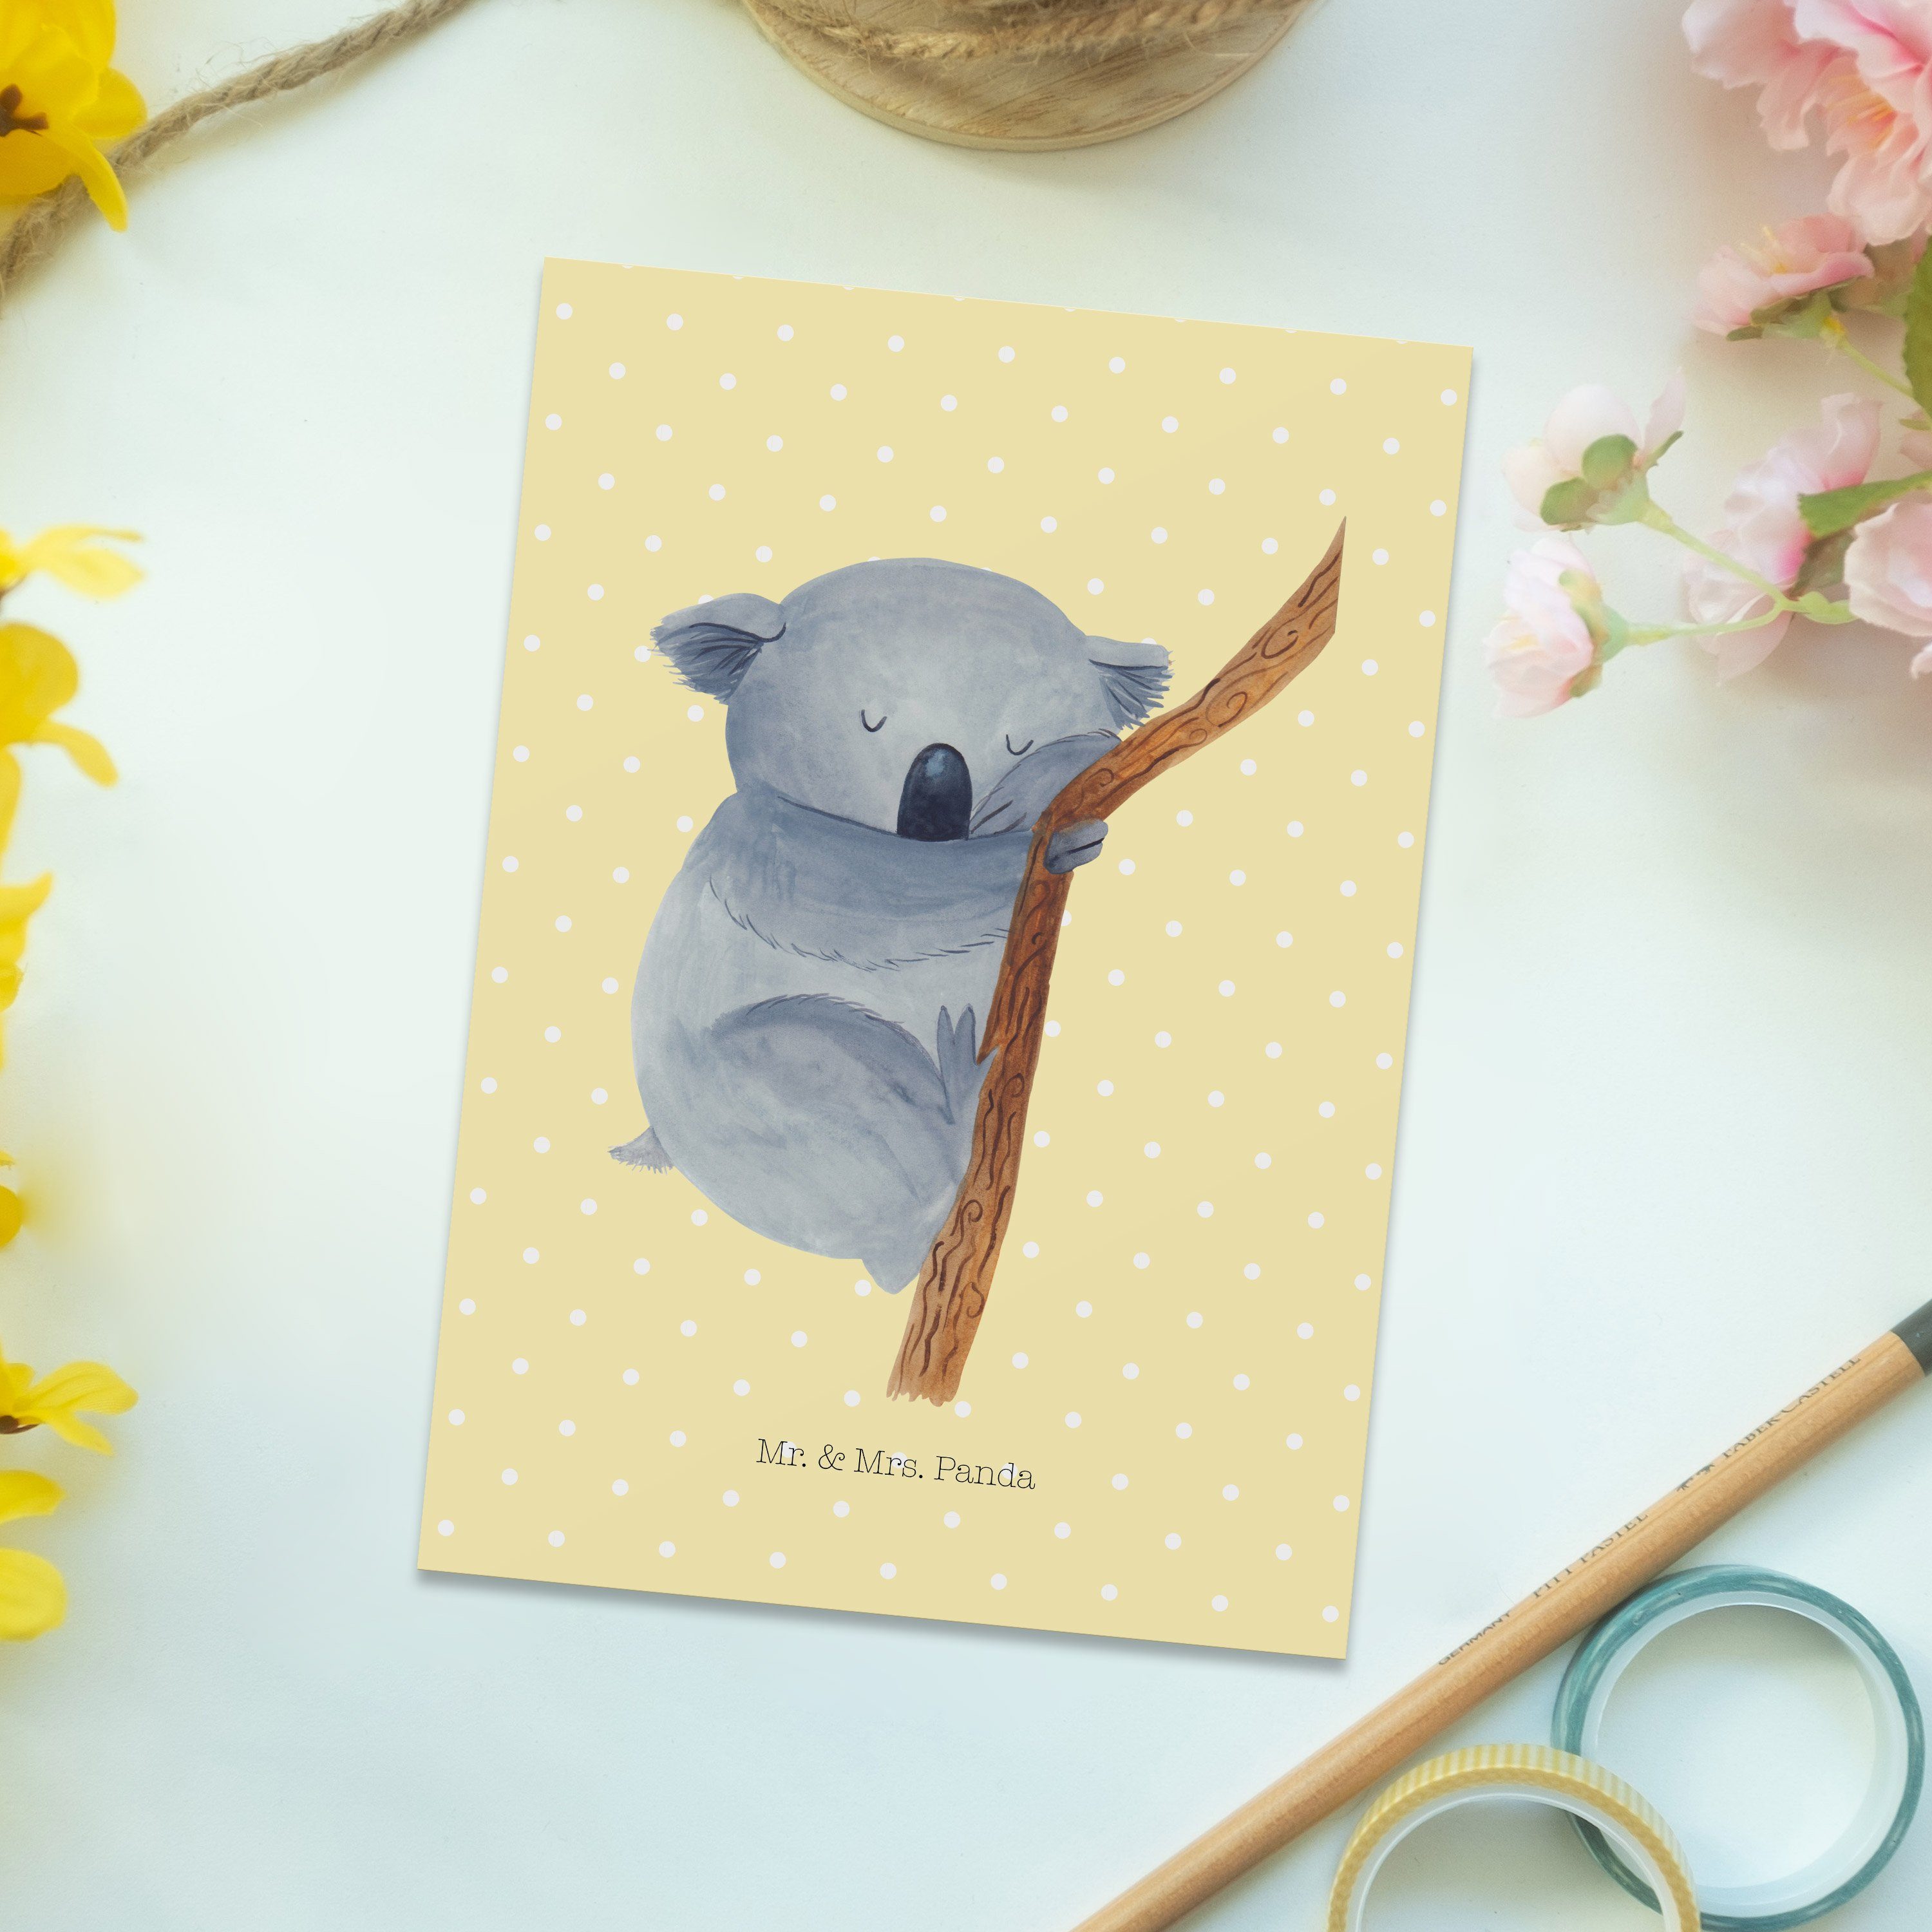 schlafen, - & Mrs. Mr. Pastell Koalabär Postkarte Karte, Traum, Panda Geschenk, - Gelb Ansichtsk